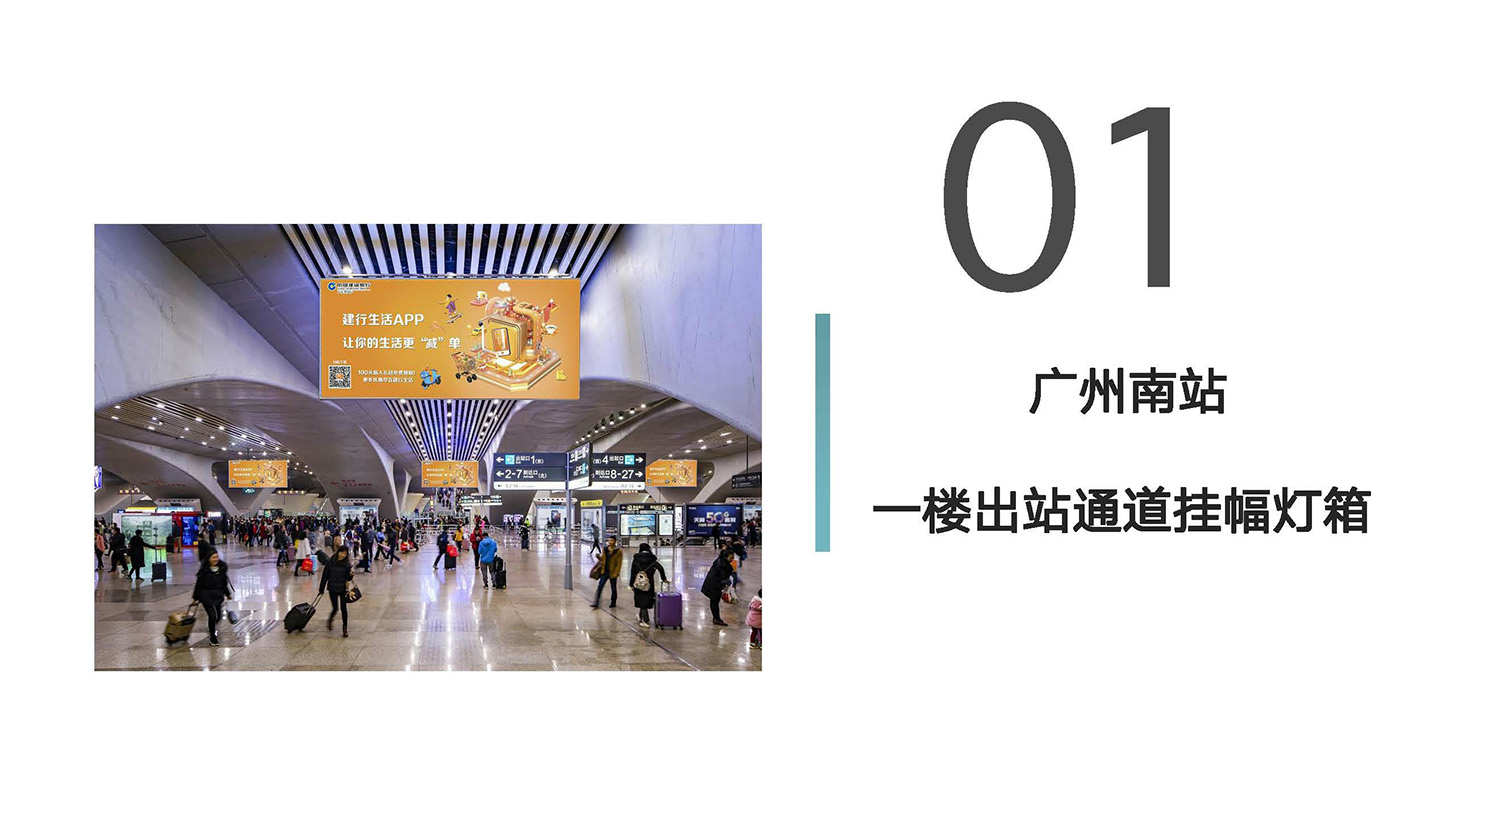 广州南站灯箱广告及和谐号贵广线列车全媒体广告(图2)